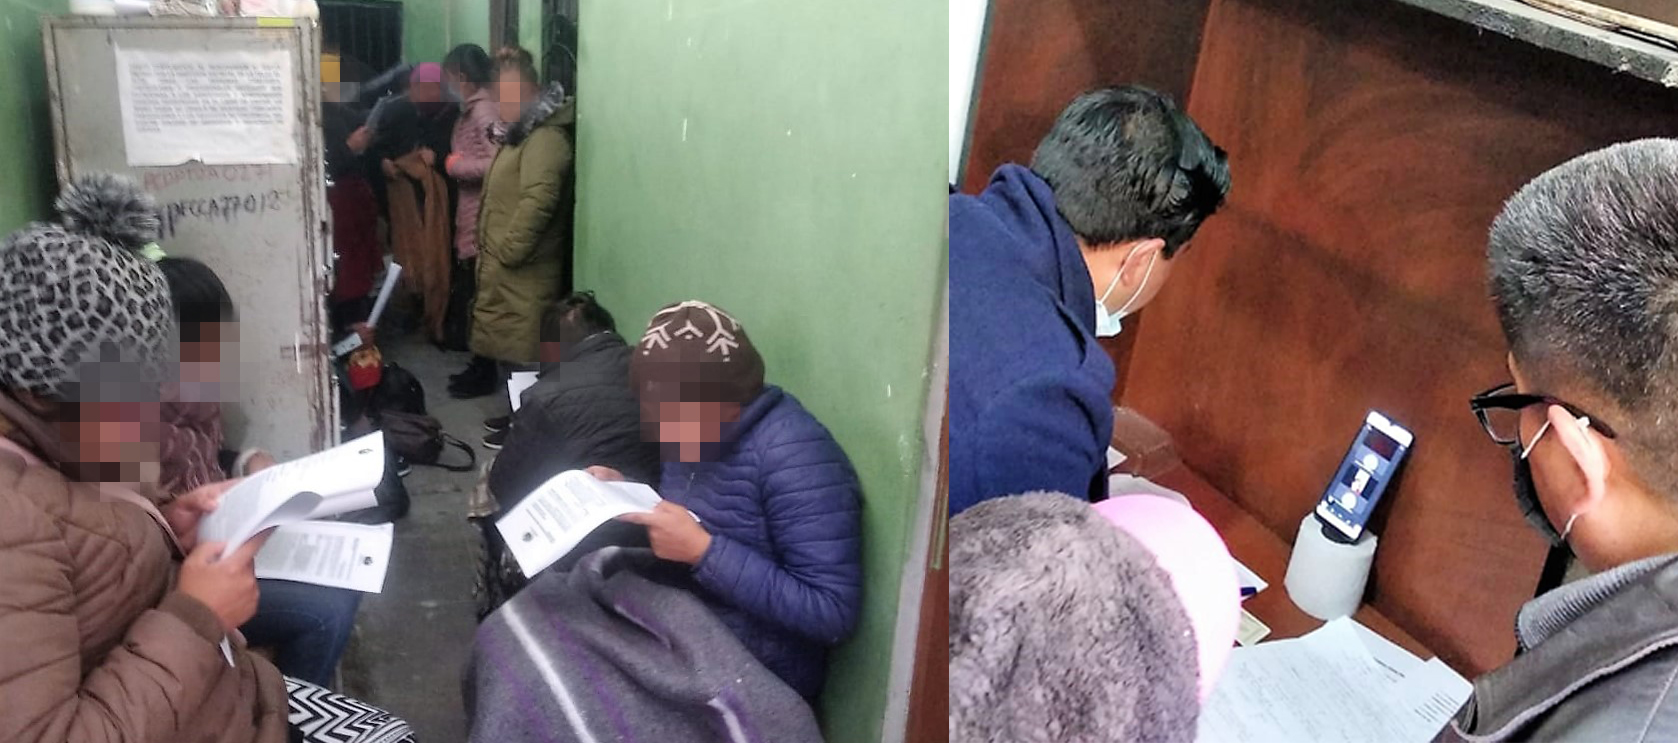 Verificación defensorial evidencia espacios inadecuados en celdas de la FELCC El Alto, que conlleva a vulneración de Derechos Humanos